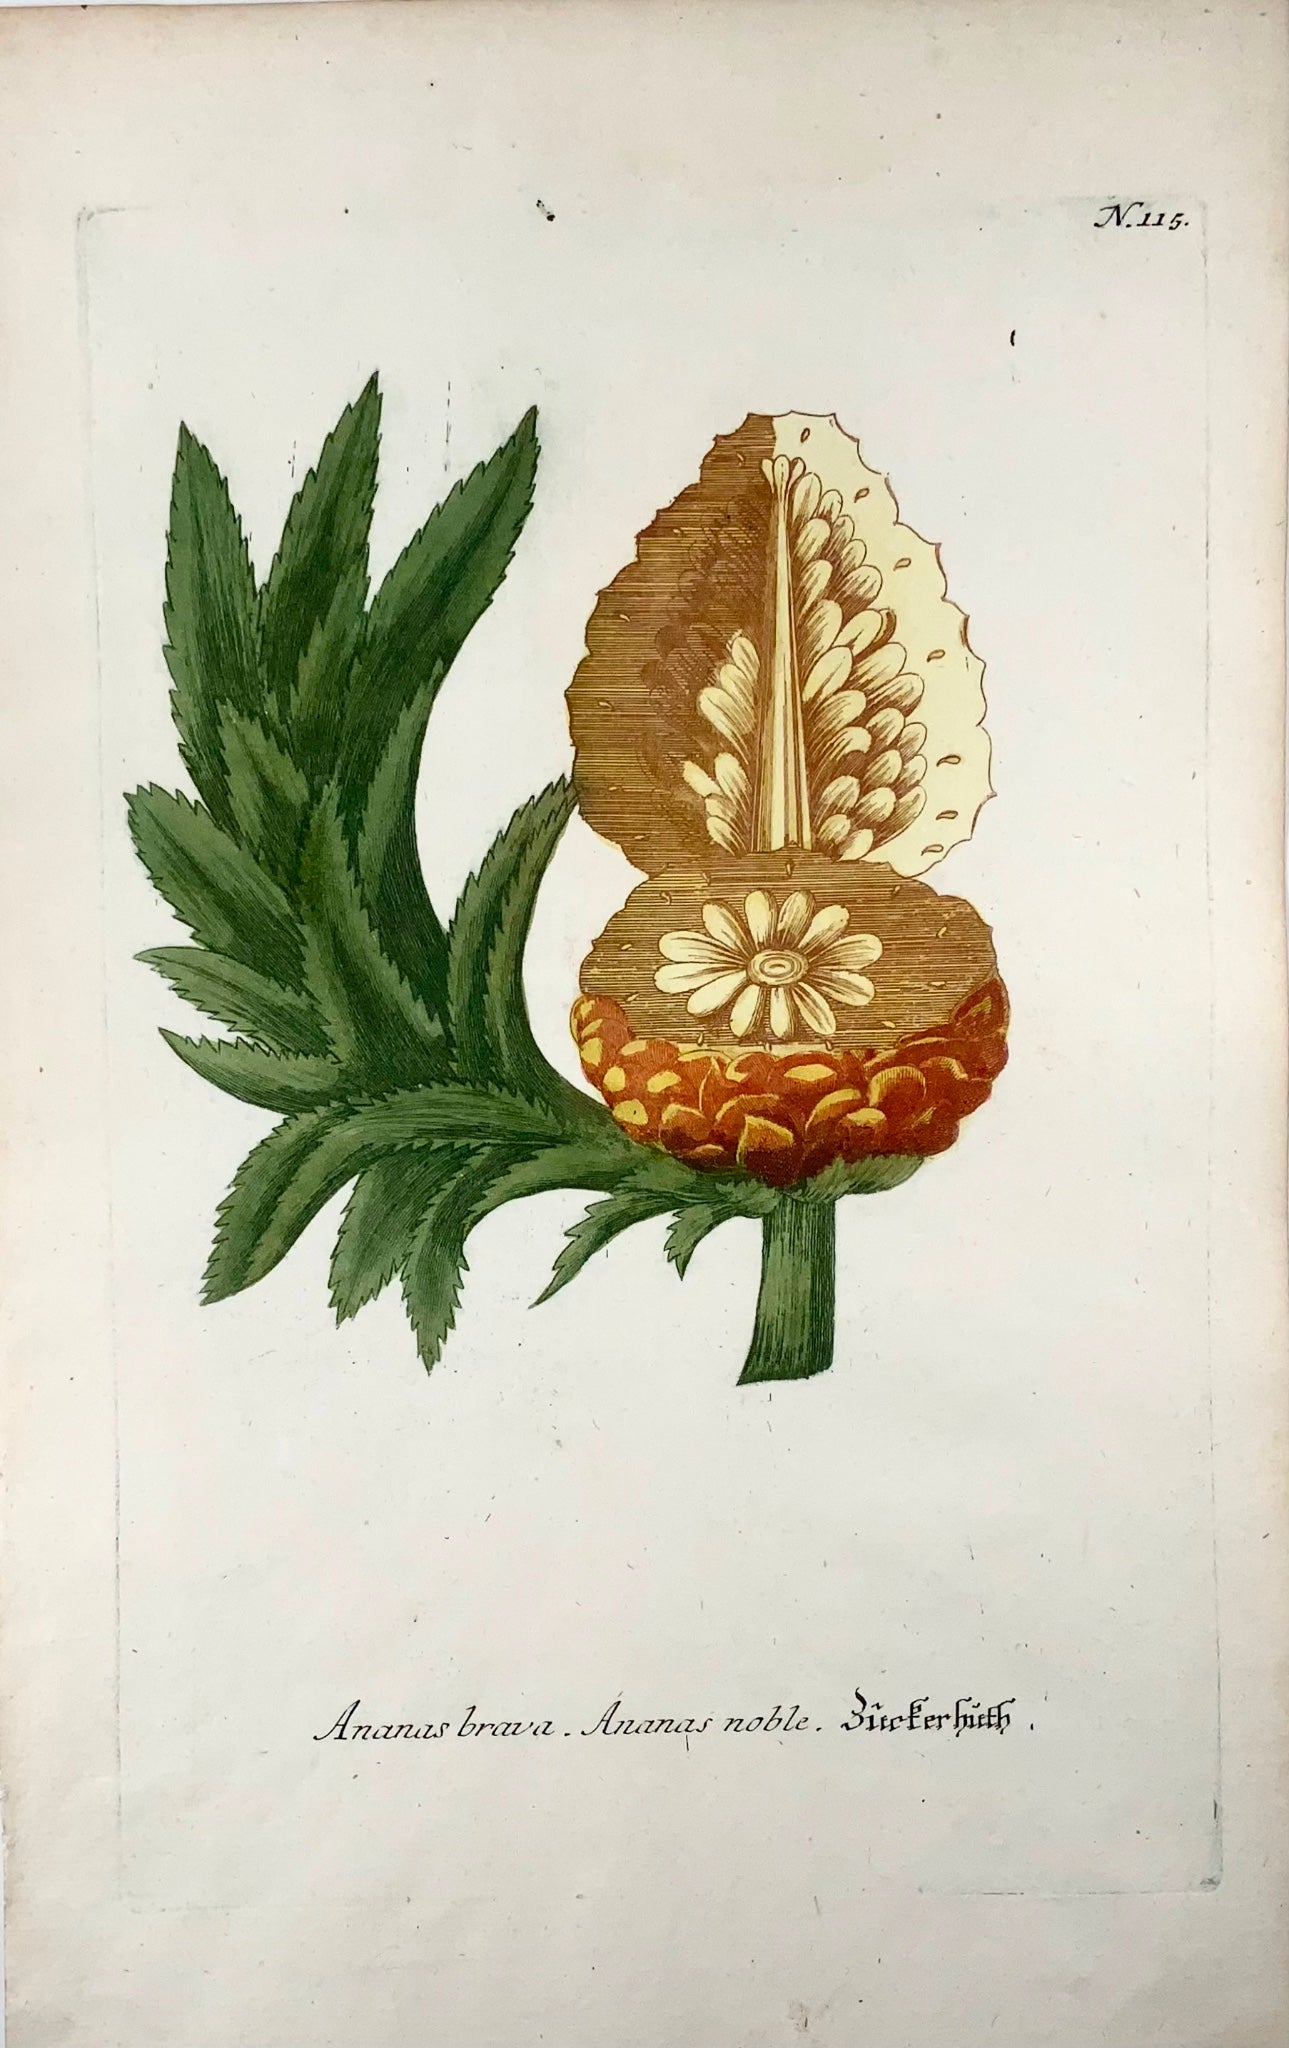 1739 Ananas, ananas, mezzatinta stampata a colori, foglio grande, Weinmann, botanica